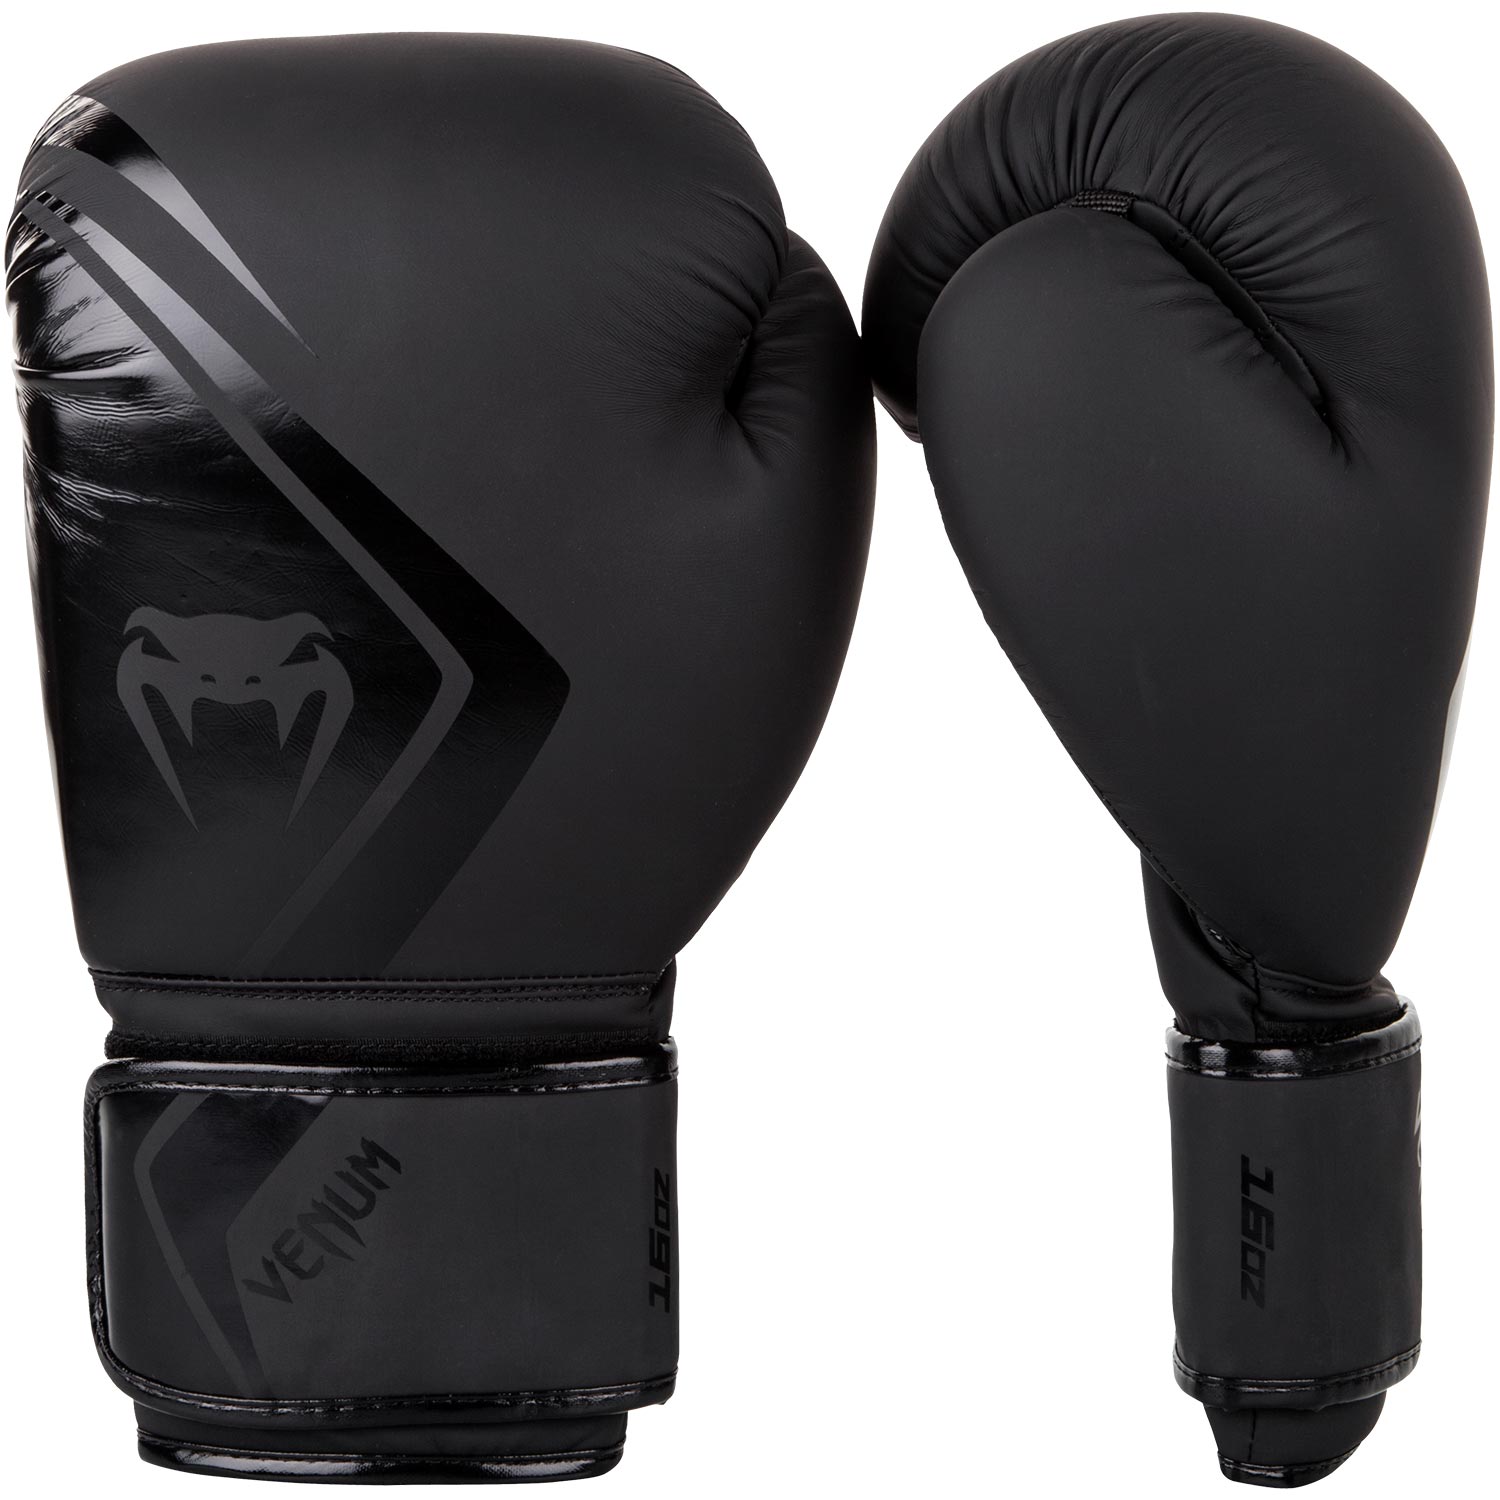 Boxerské rukavice Contender 2.0 černé VENUM vel. 16 oz